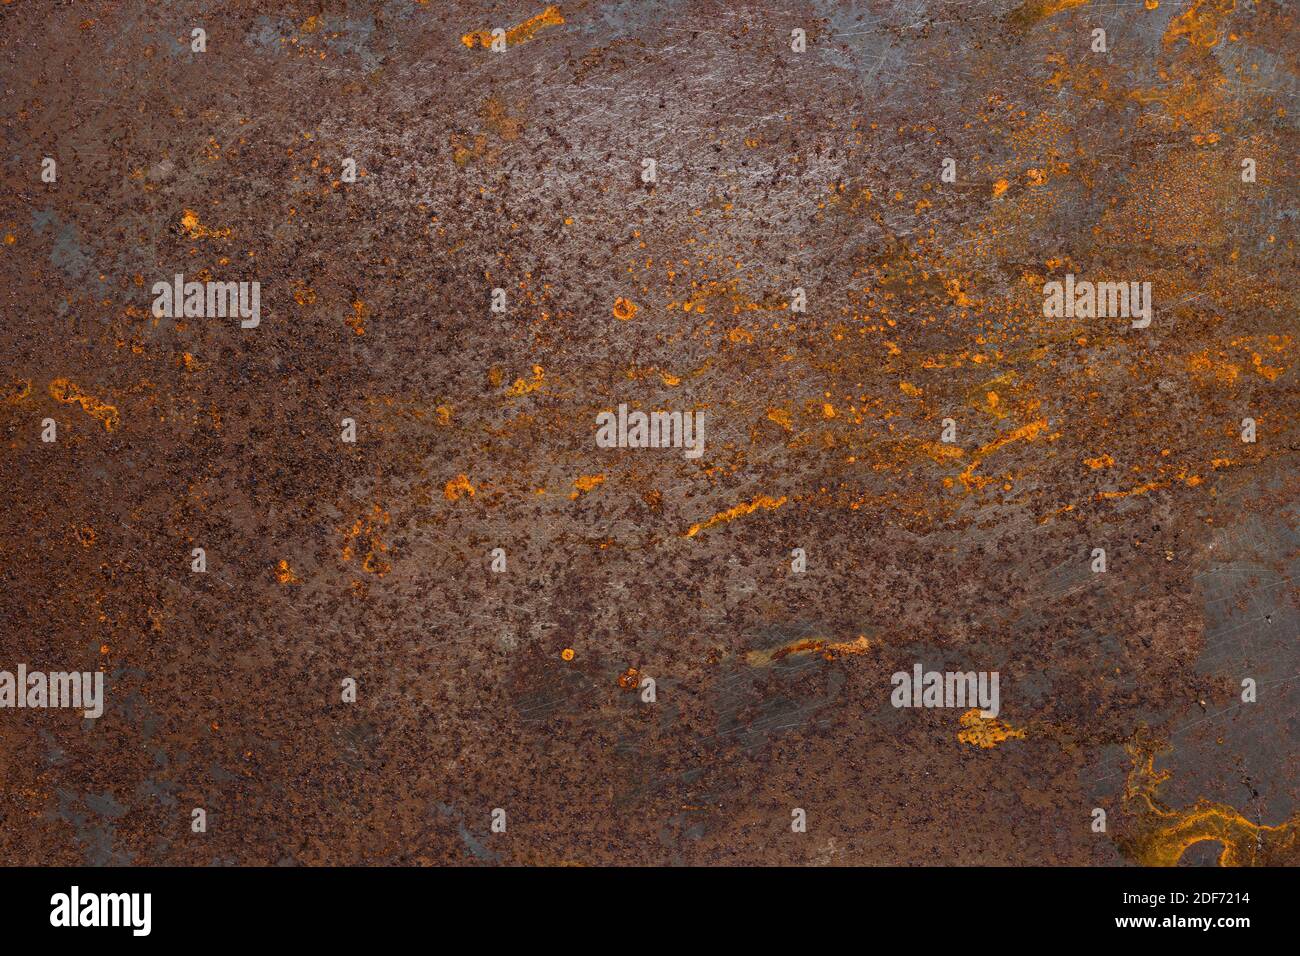 La textura de la superficie metálica tiene daños oxidados Foto de stock